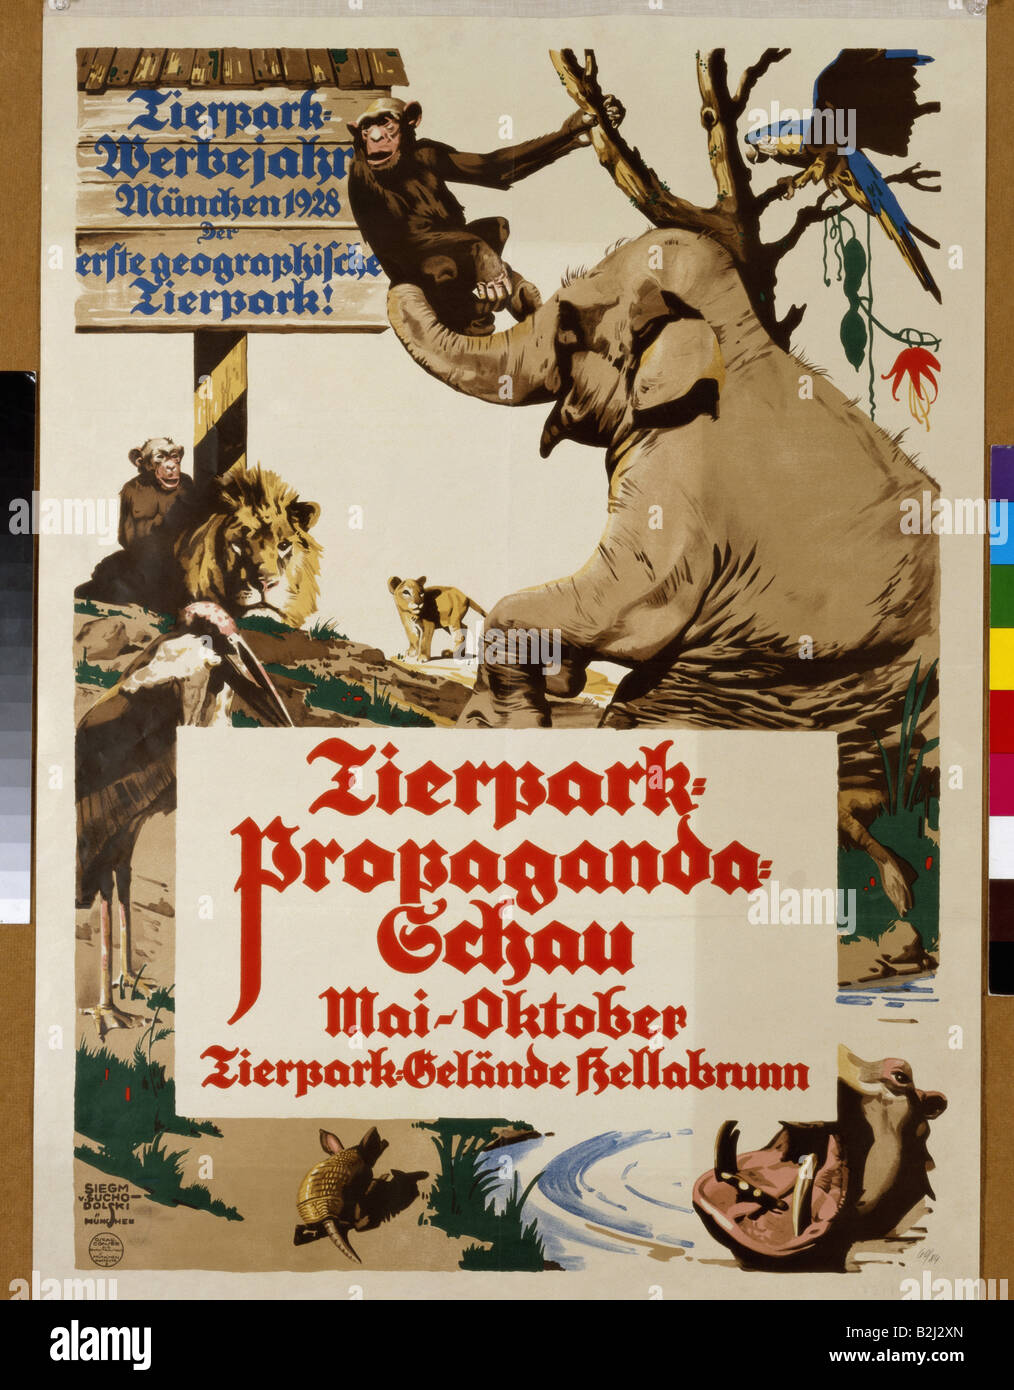 advertising, events, 'Tierpark - Propaganda - Schau', (Zoo - Propaganda - Show), Tierpark Hellabrunn, Munich, May - October 1928, poster, design by Sigmund von Suchodolski (1875 - 1935), Stock Photo